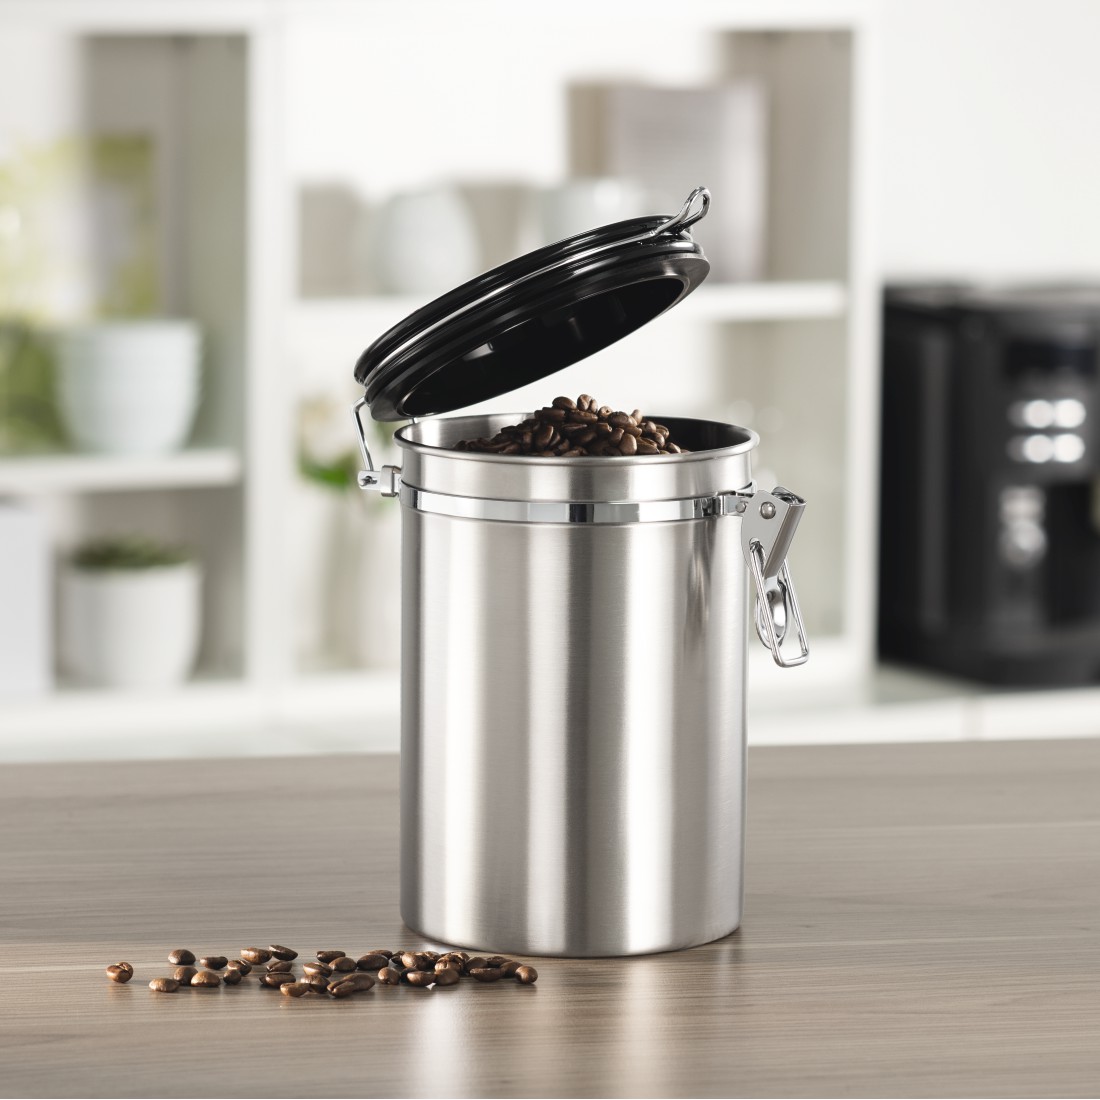 awx2 High-Res Appliance 2 - Xavax, Boîte en acier inoxydable pour 1000 g de café moulu, argentée